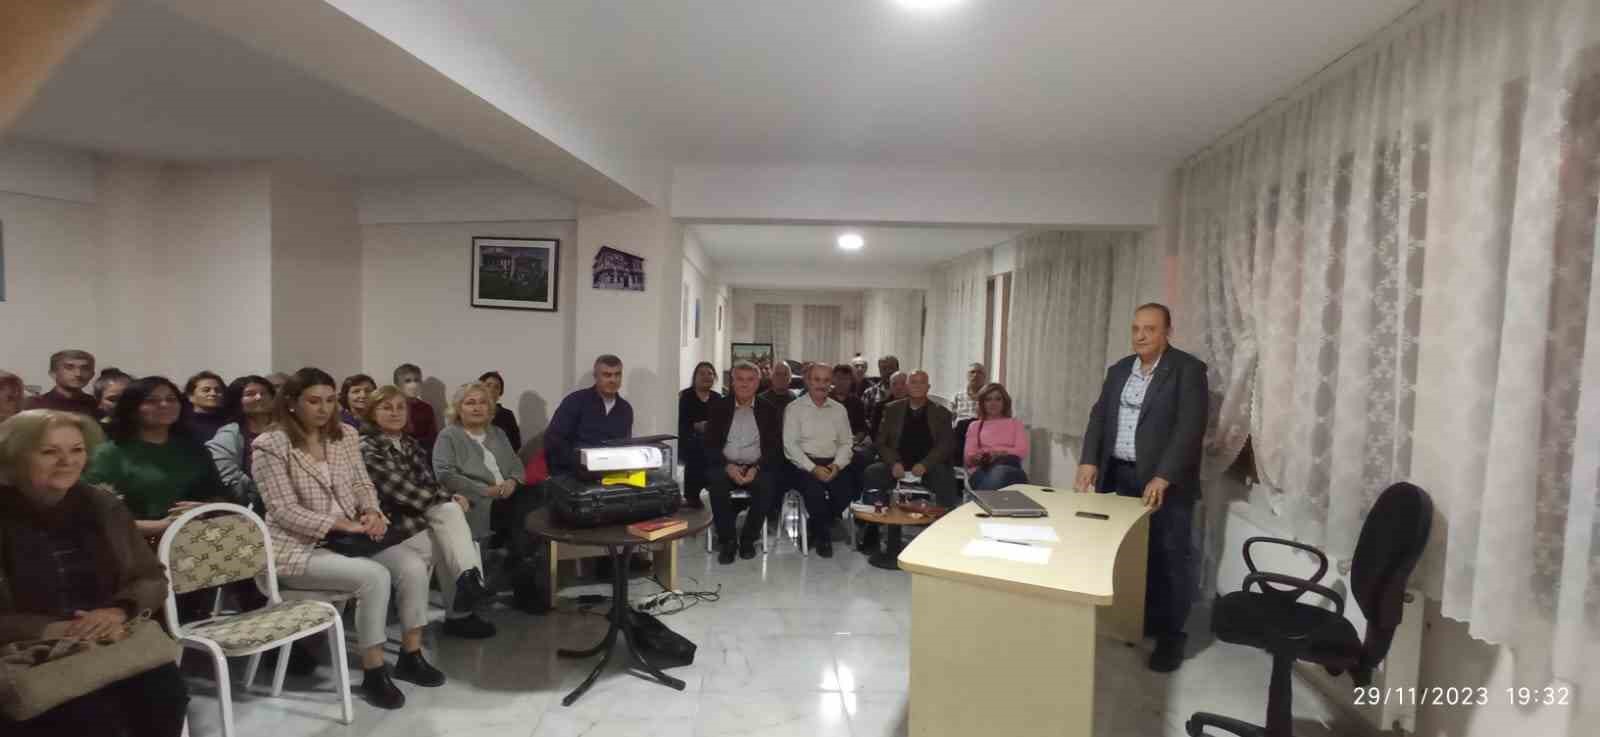 Prof. Dr. İlhami Ünlüoğlu’ dan ‘İlk Yardım’ kursu ve eğitimi